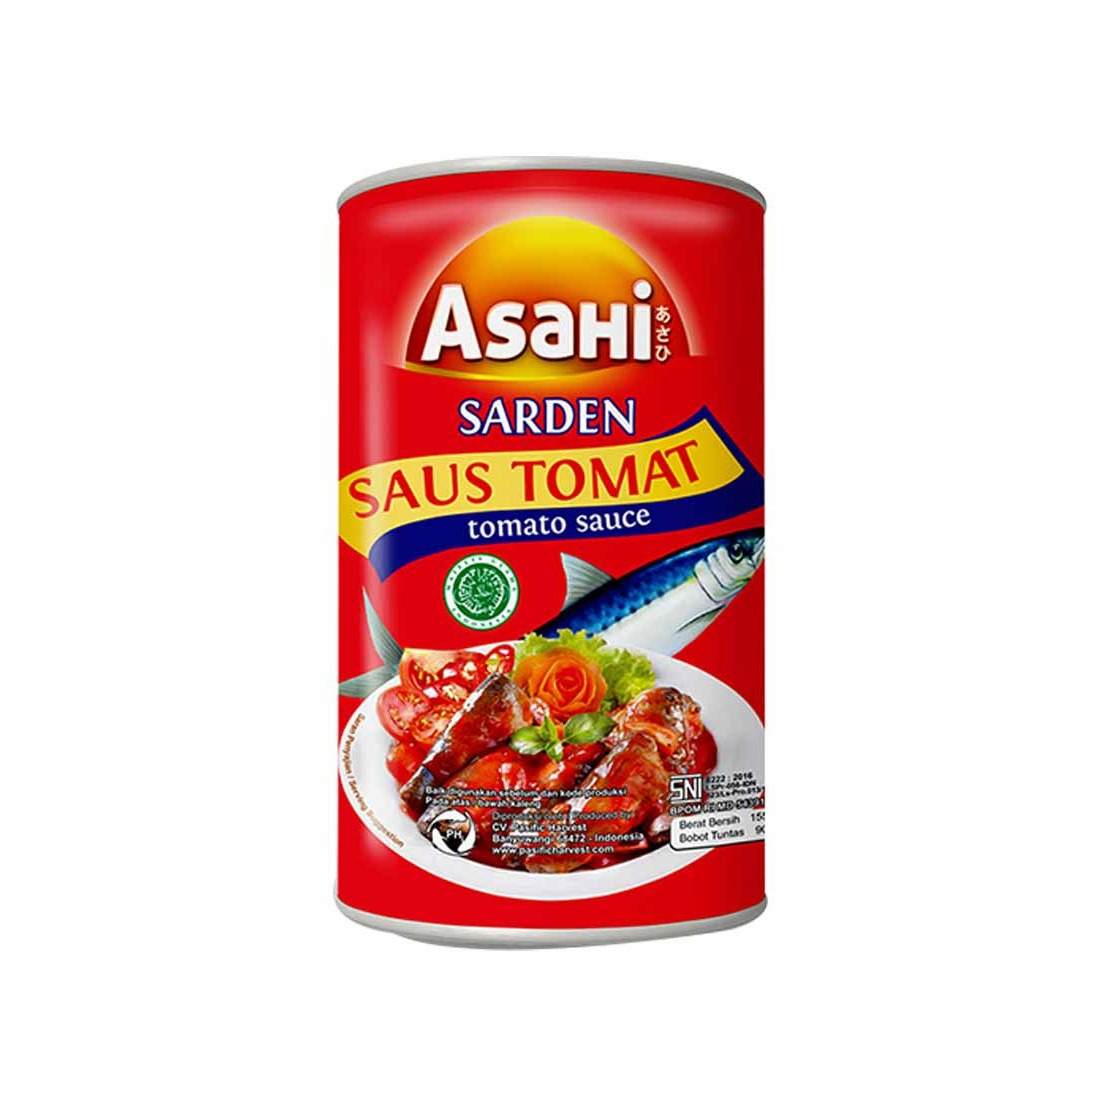 Asahi 155G Sardines Saus Tomat